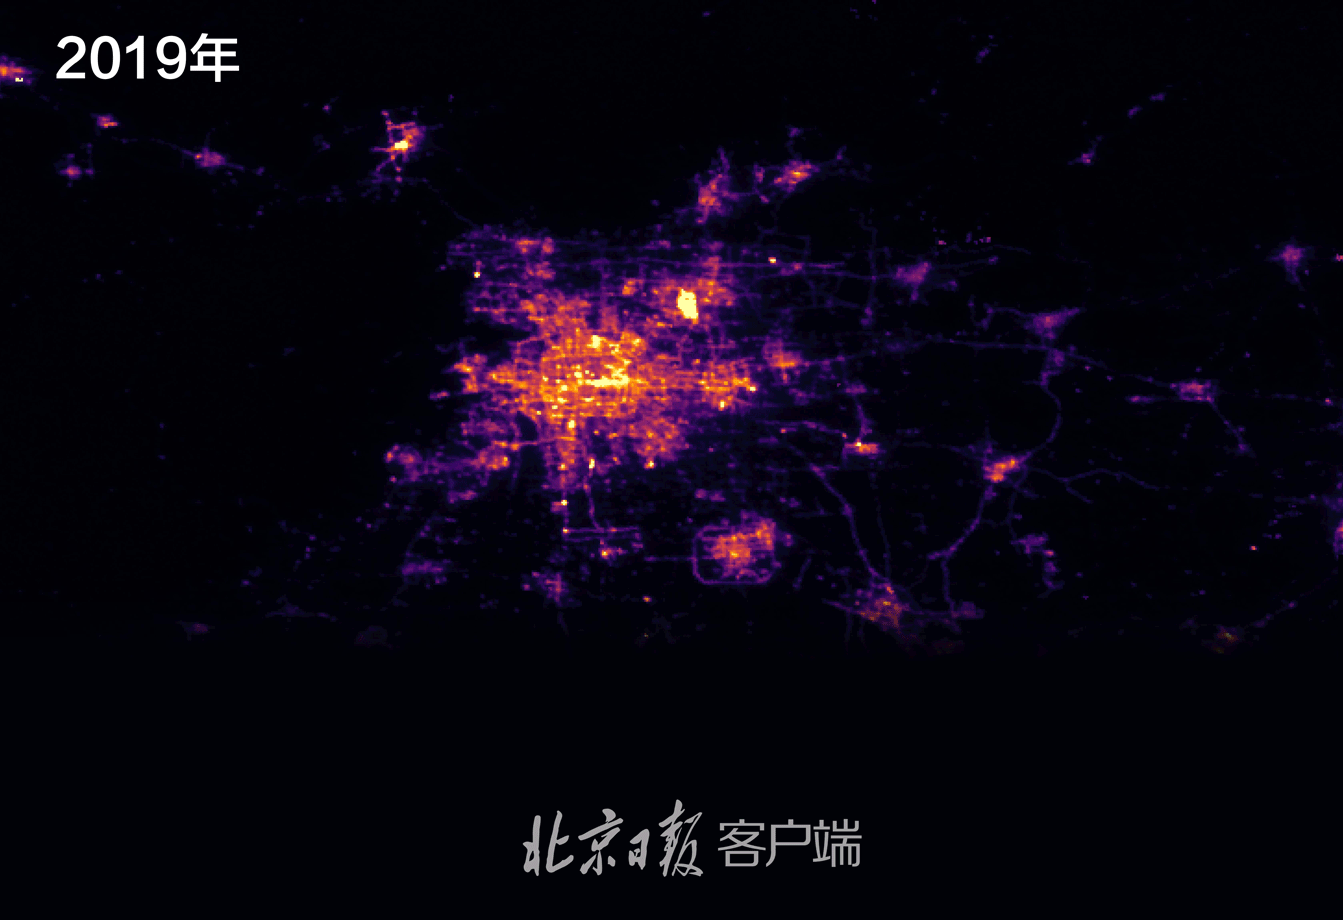 卫星新闻|聂海胜拍的北京金光熠熠,卫星告诉你是如何变亮的